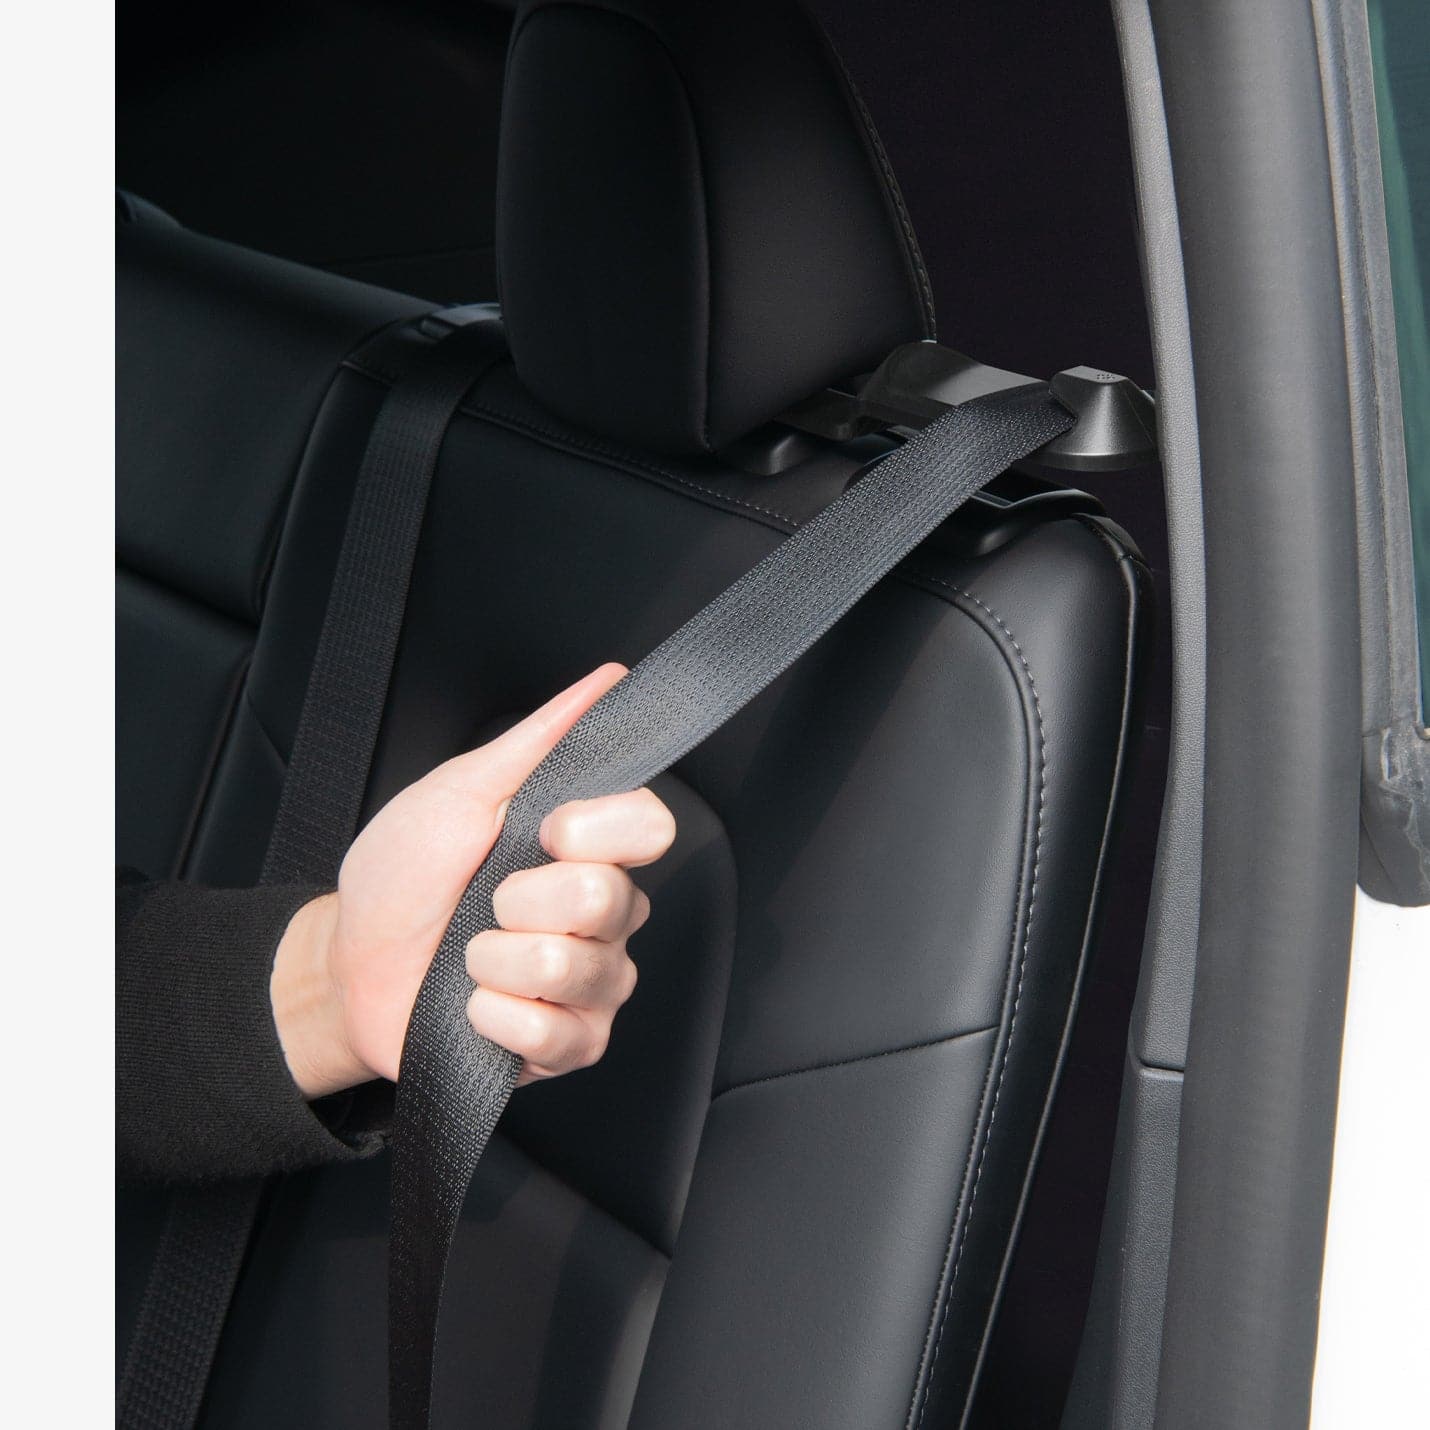 SPIGEN Backseat Seatbelt Guide Holder TO250 2PCS for Tesla Model Y